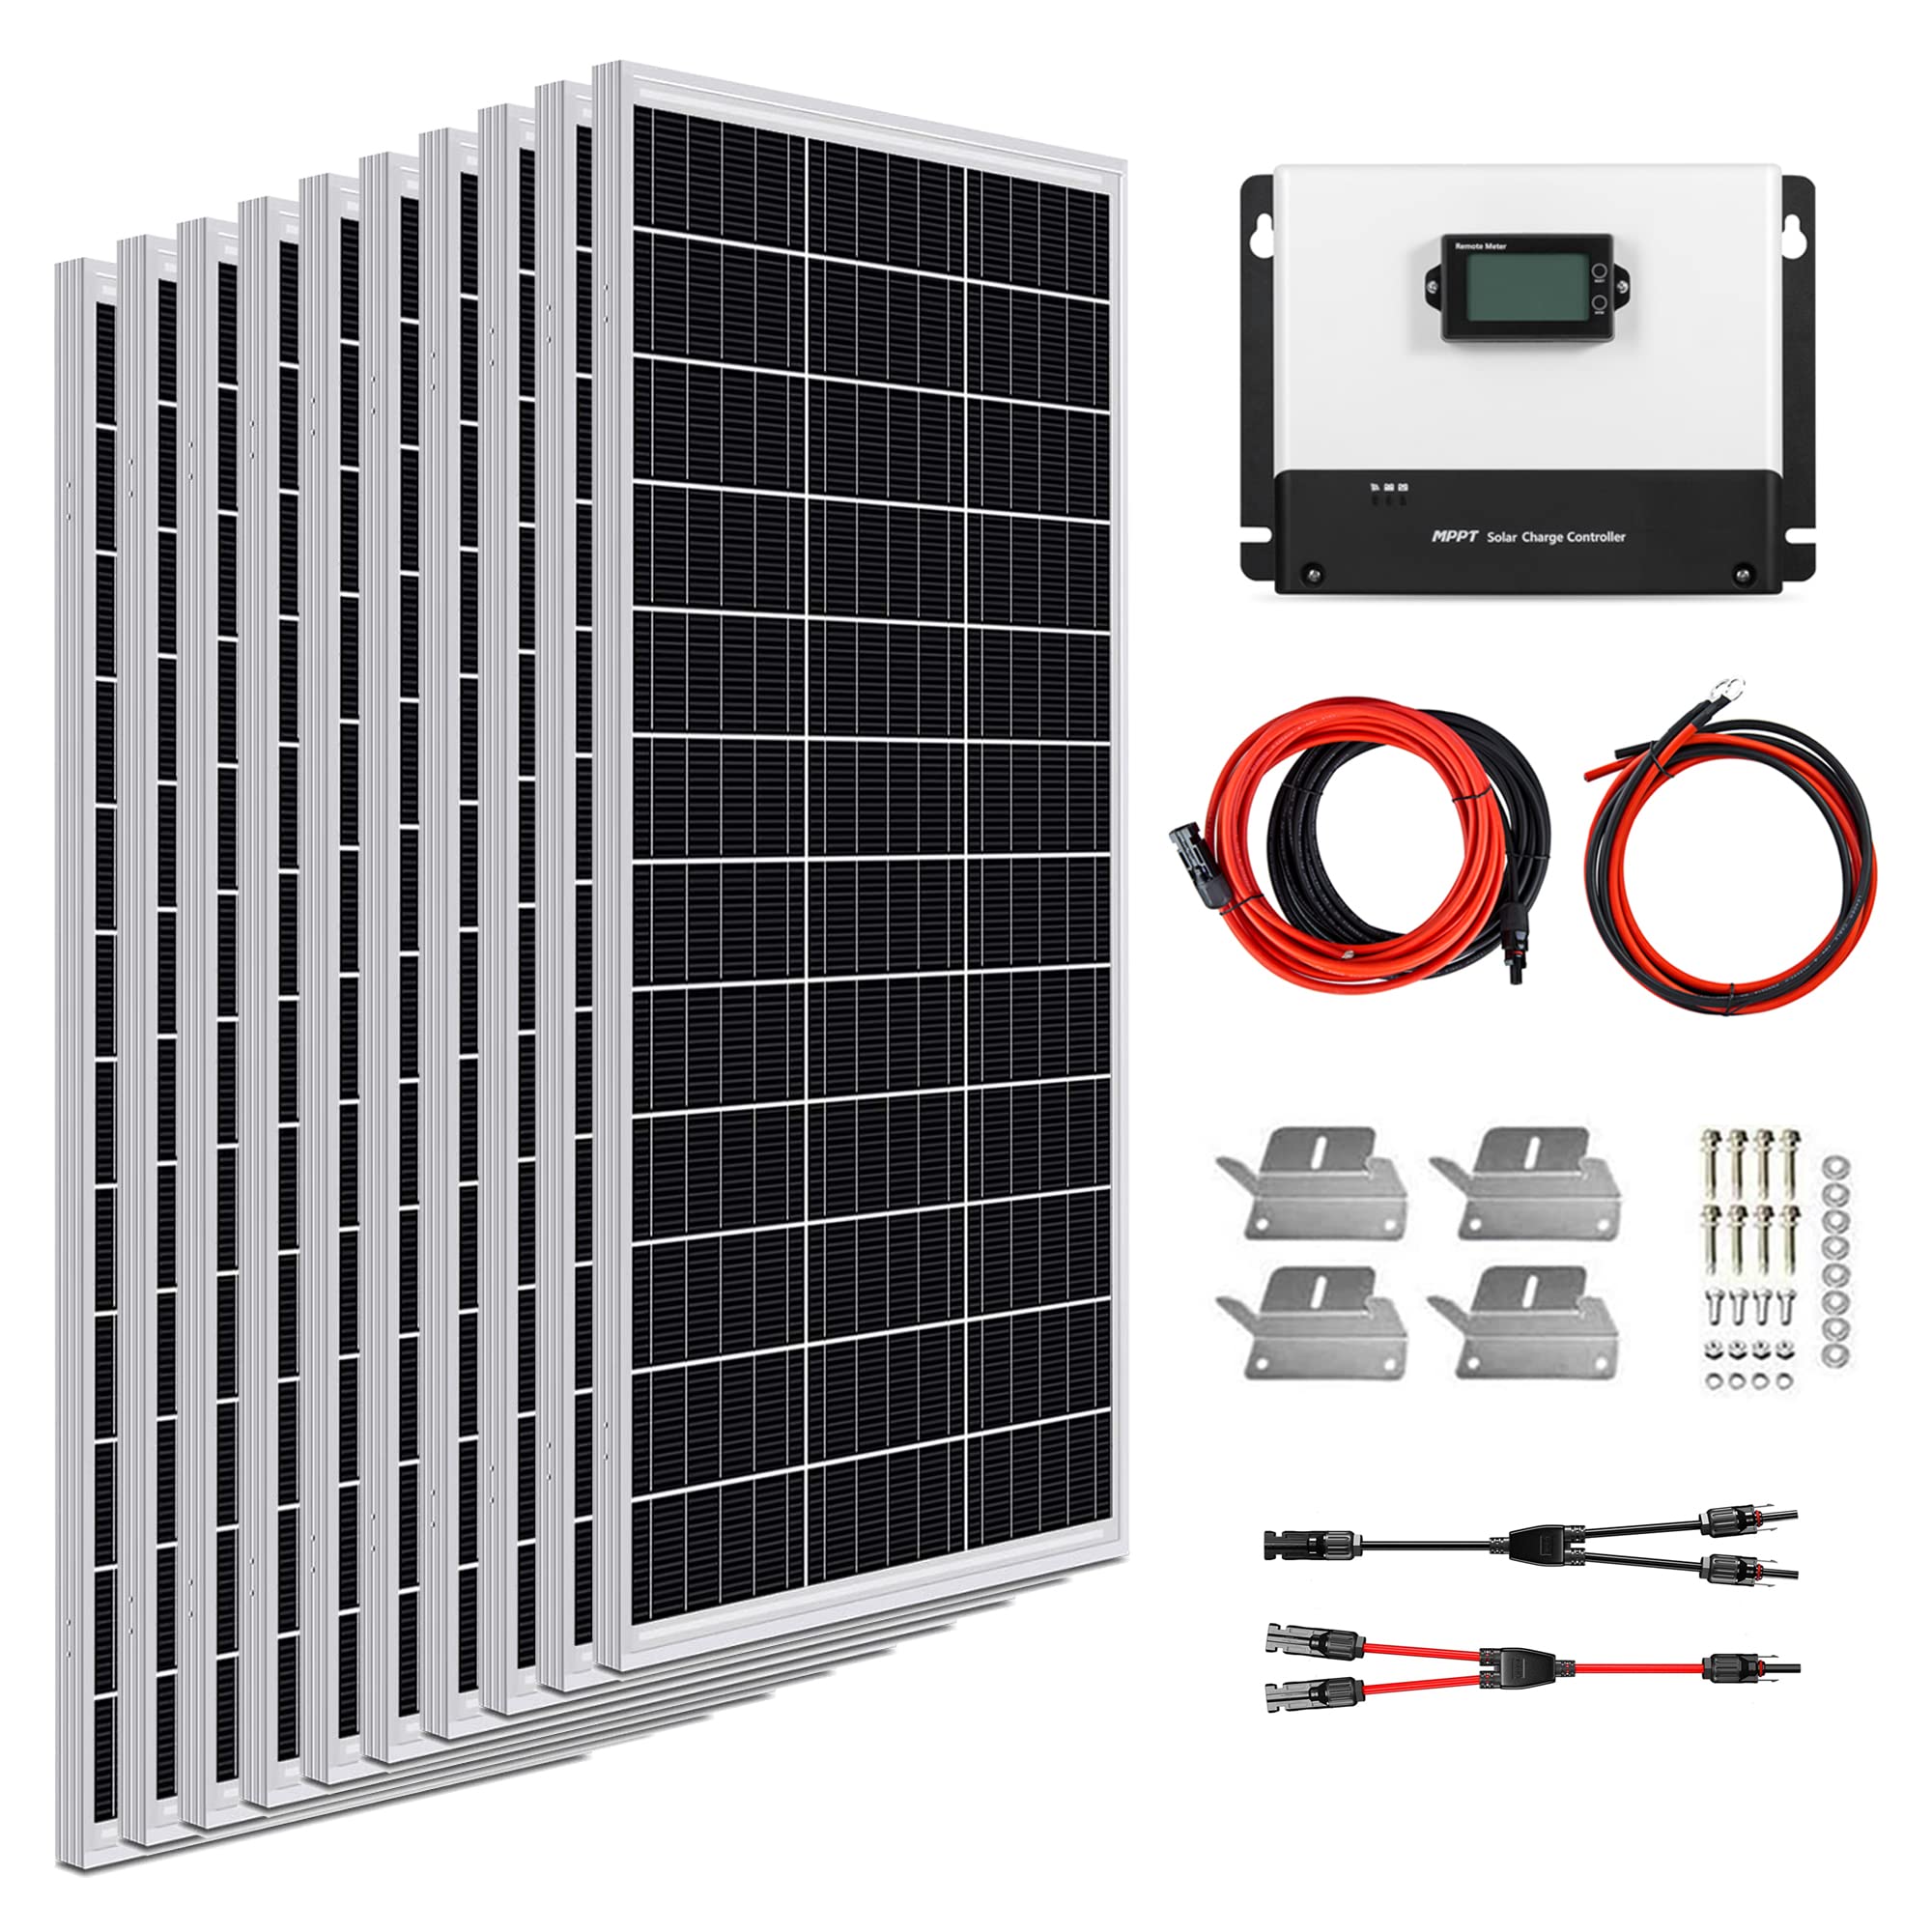 1000W 12V Solar Panel Kit includes